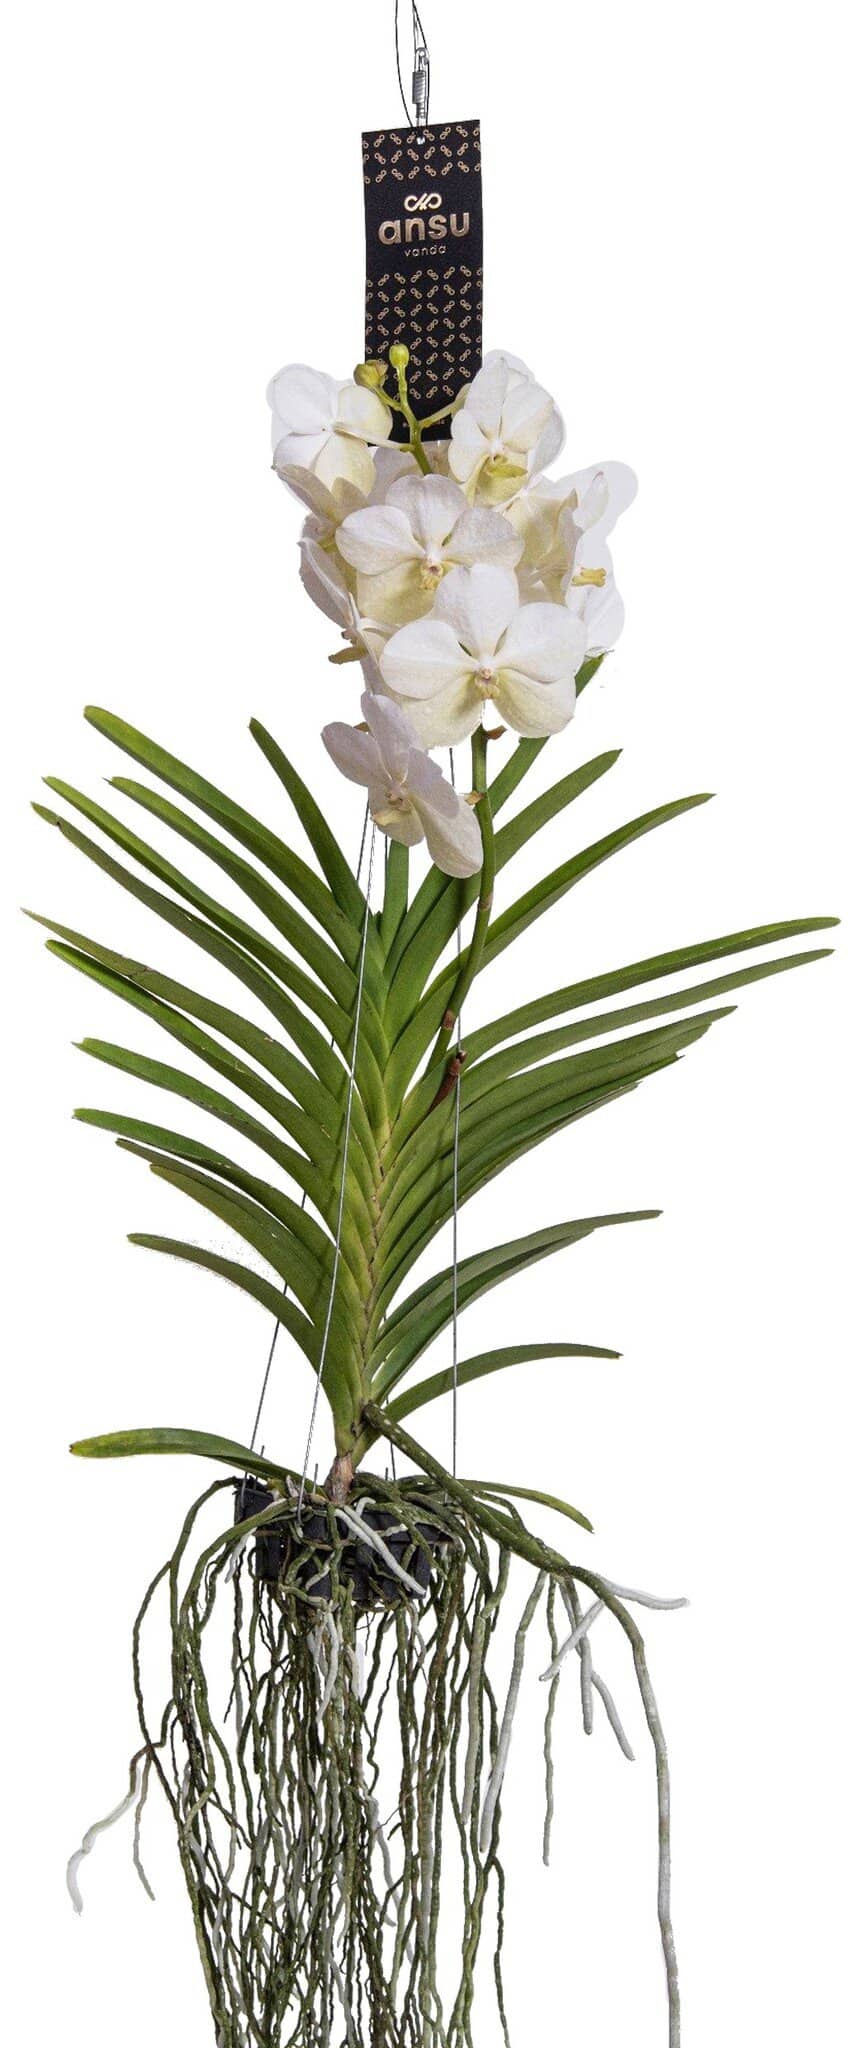 Vanda orchidee - Wit - L bezorgen via Florastore